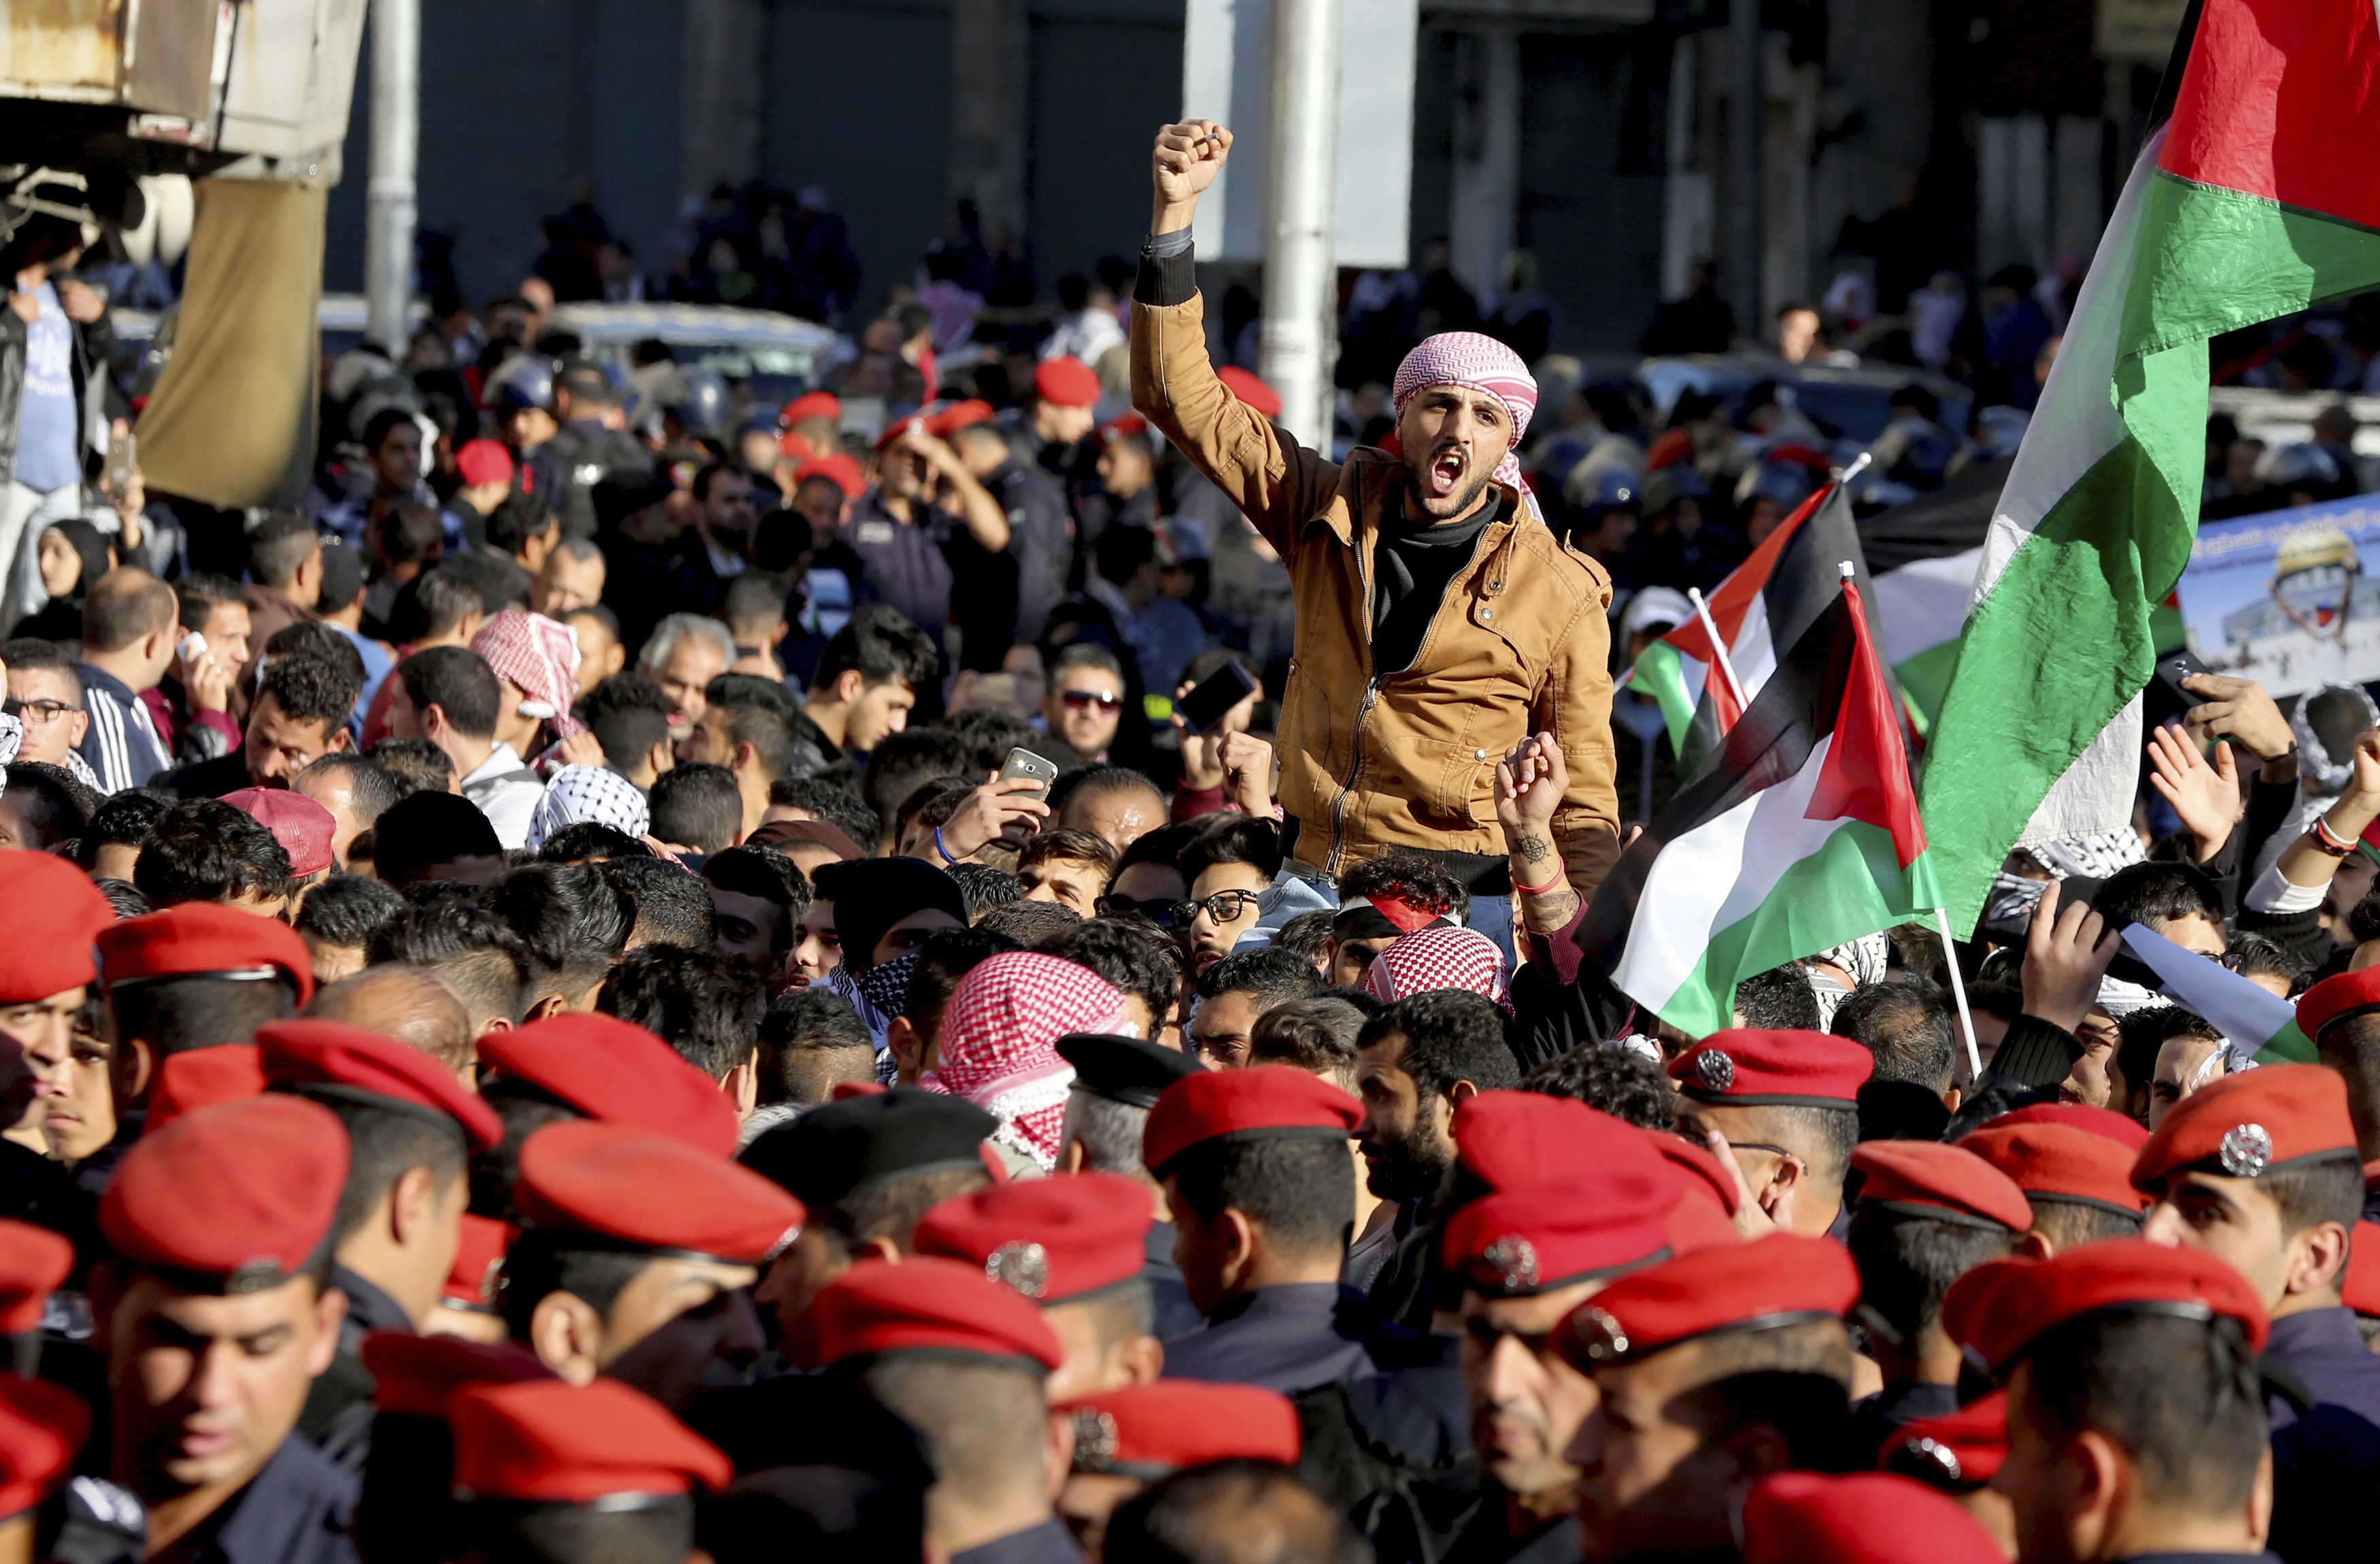 Йорданци протестират в столицата Аман срещу решението на Тръмп да признае Ерусалим за столица на Израел